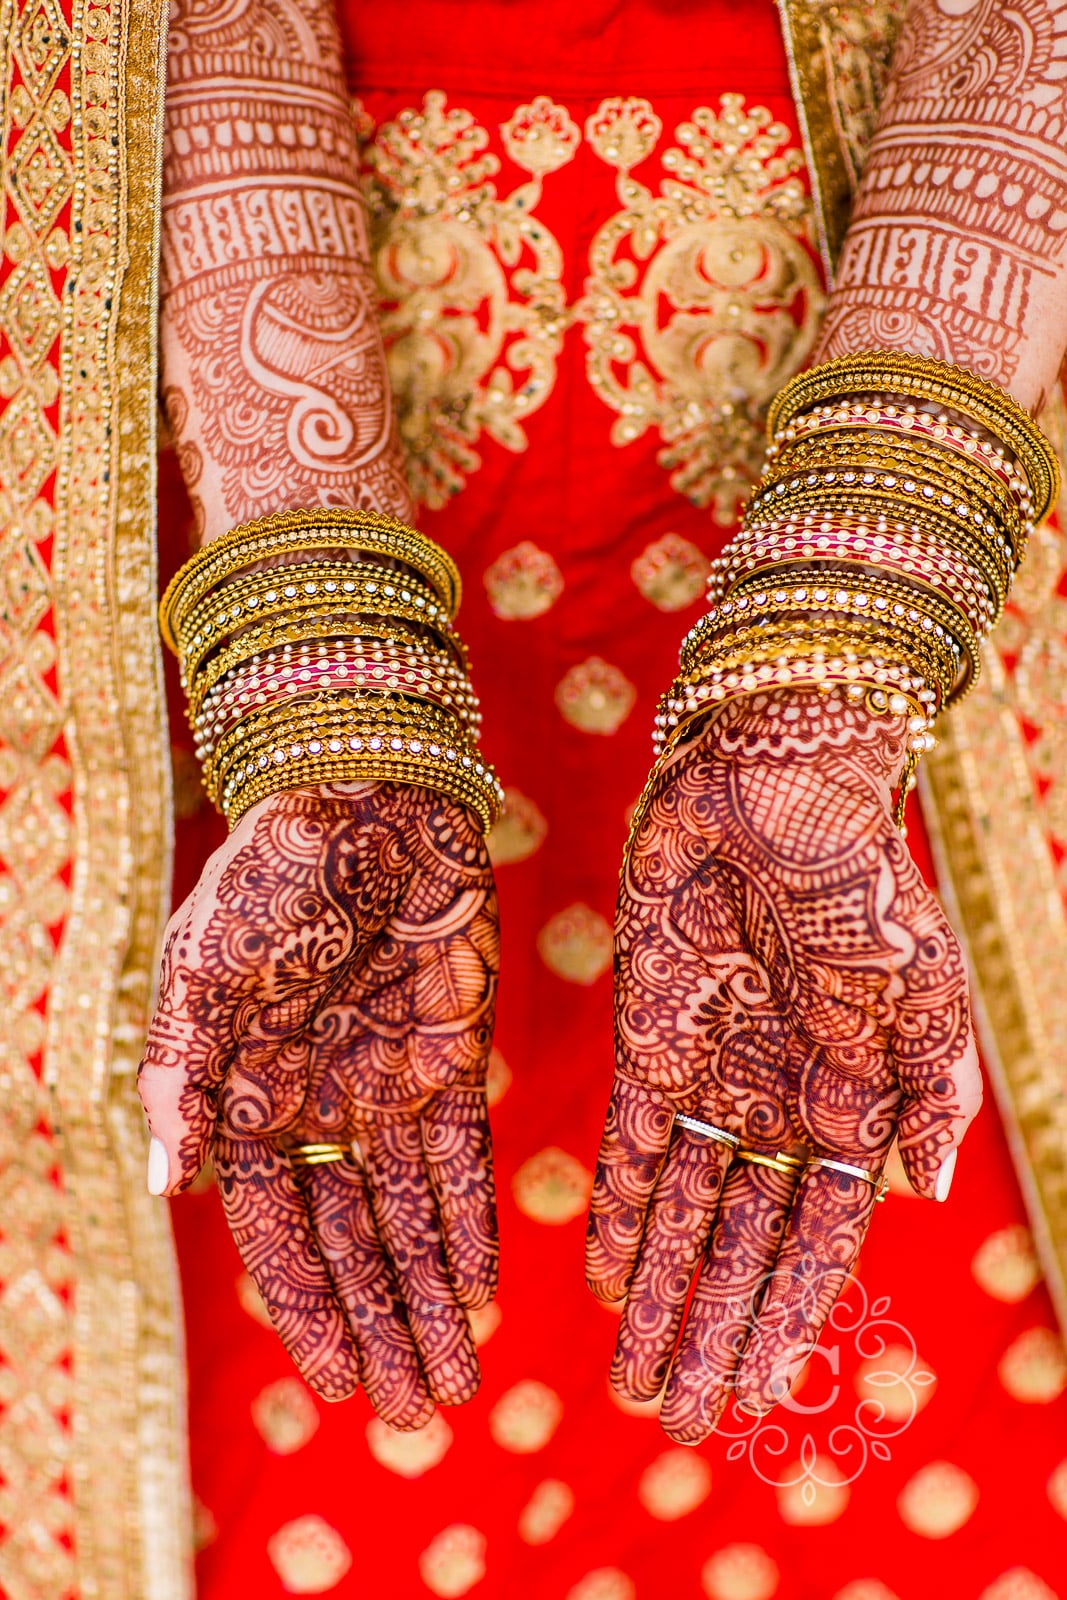 Hindu Temple MN Indian Wedding Photos | Rachael + Nishant